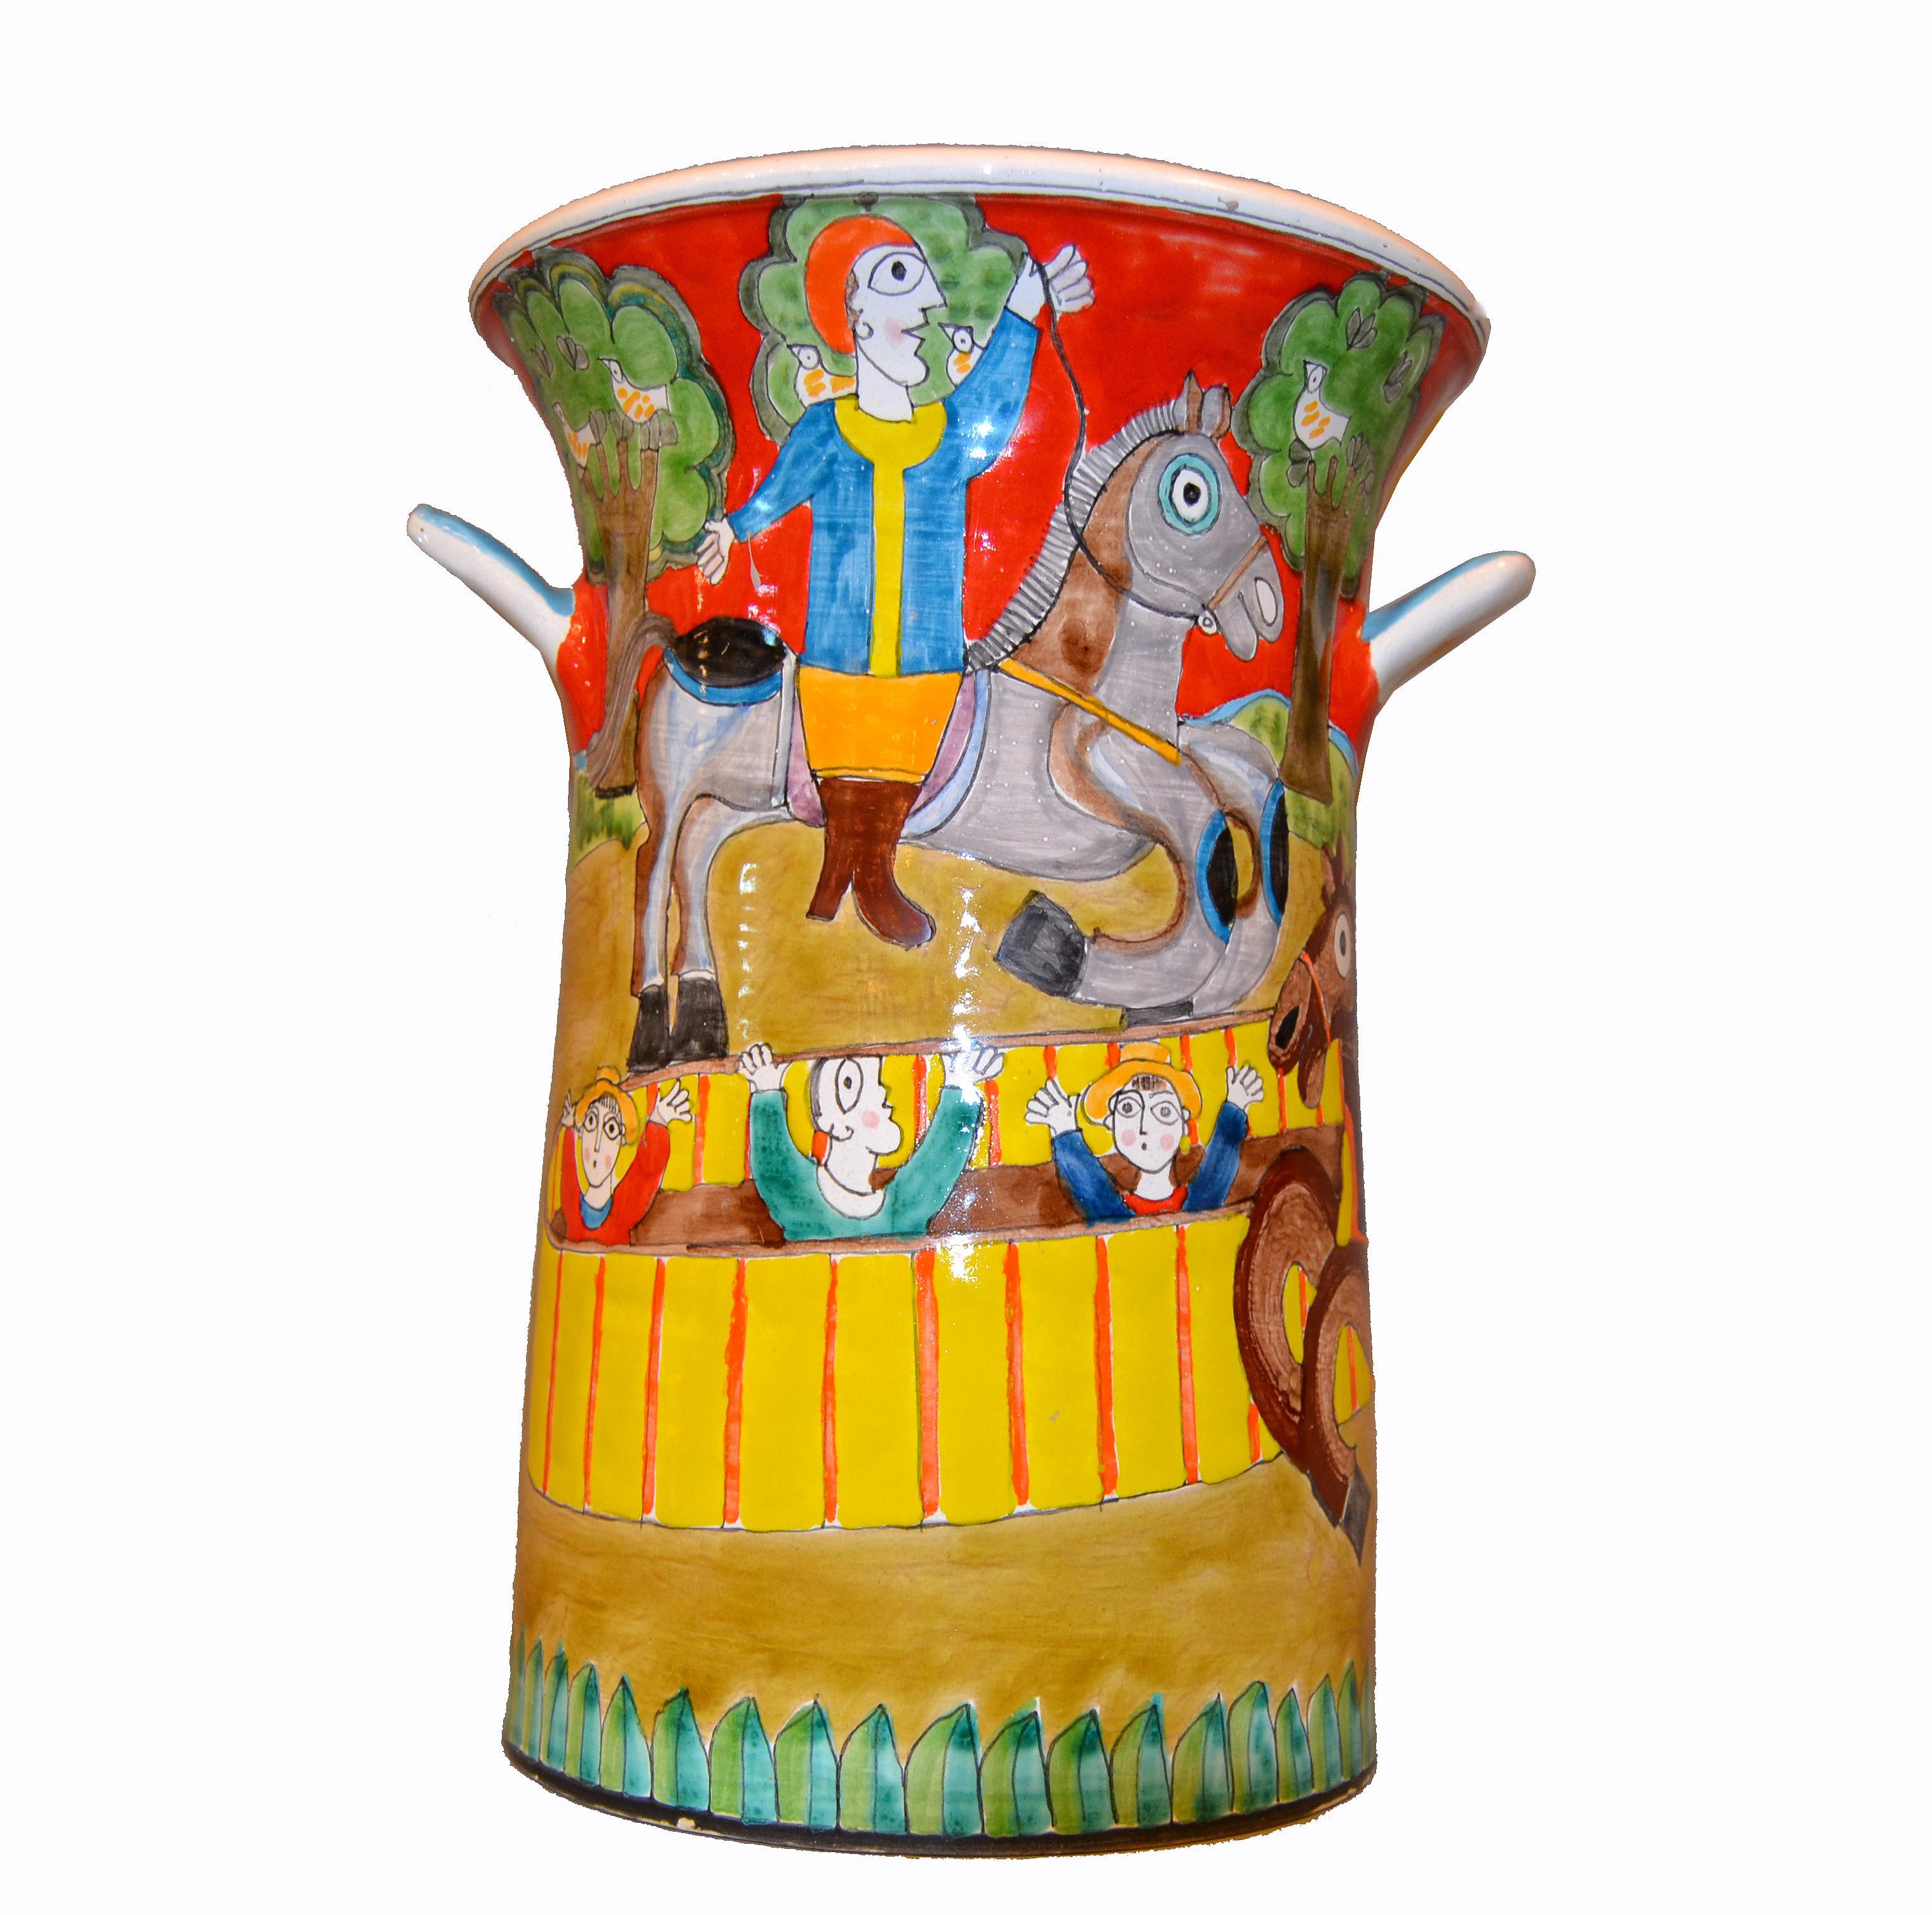 Eine glasierte und farbenfrohe Vase oder ein Gefäß aus handbemalter Keramik von Giovanni Desimone, circa 1969, aus Italien.
Das Gemälde zeigt zwei Männer auf Pferden, die in einer Zirkusarena reiten und denen die Zuschauer applaudieren.
Die Vase ist